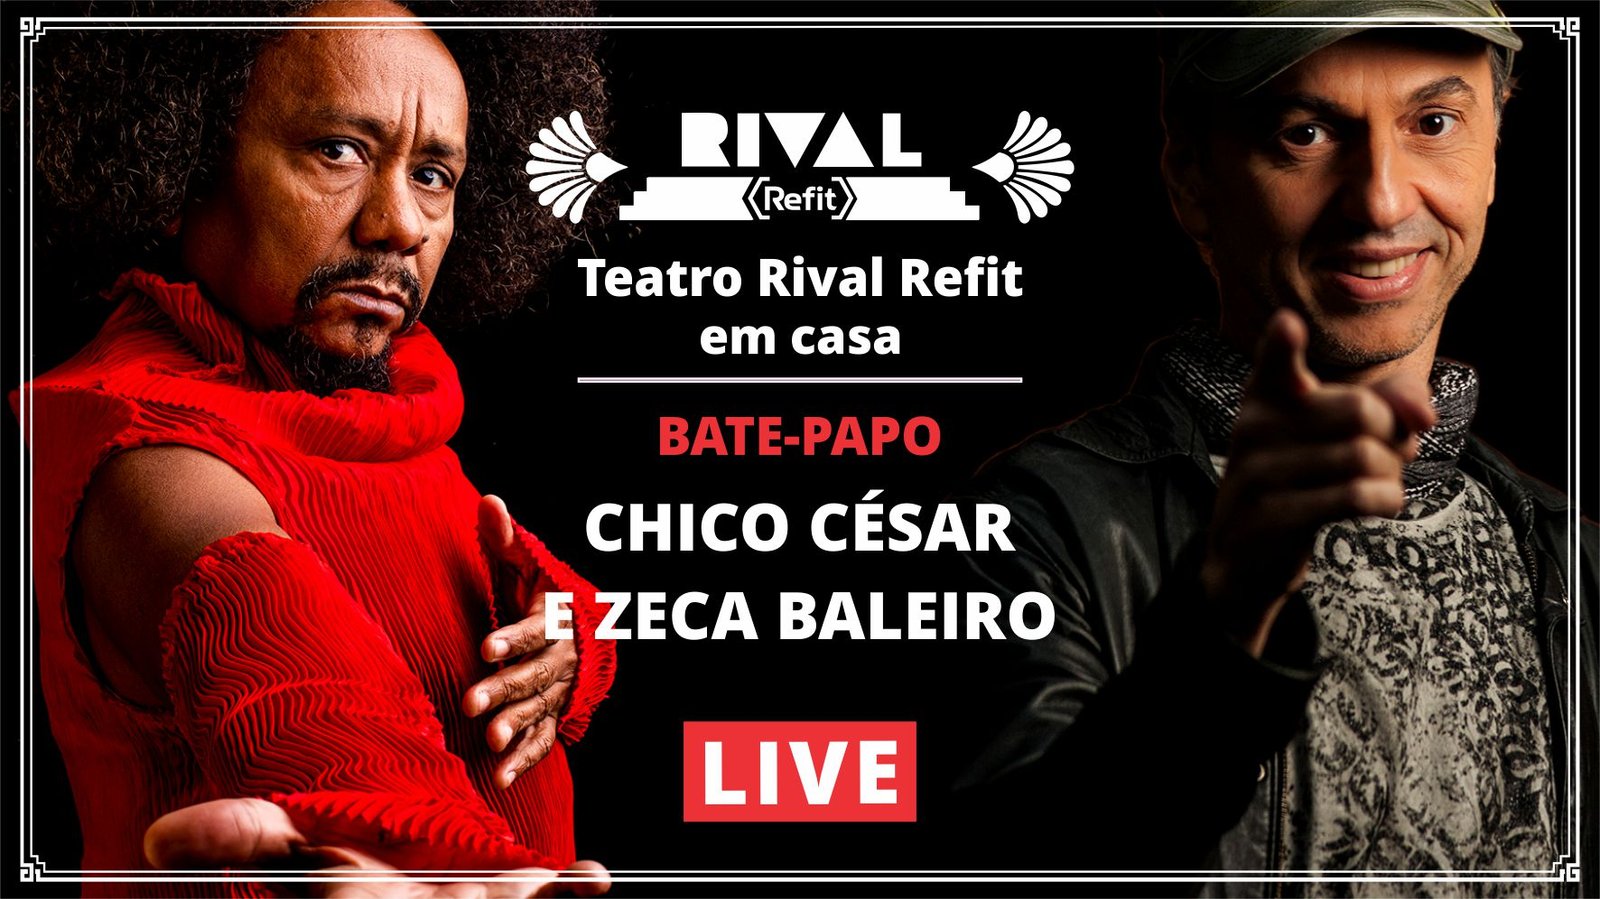 Zeca Baleiro e Chico César em live do Teatro Rival Refit